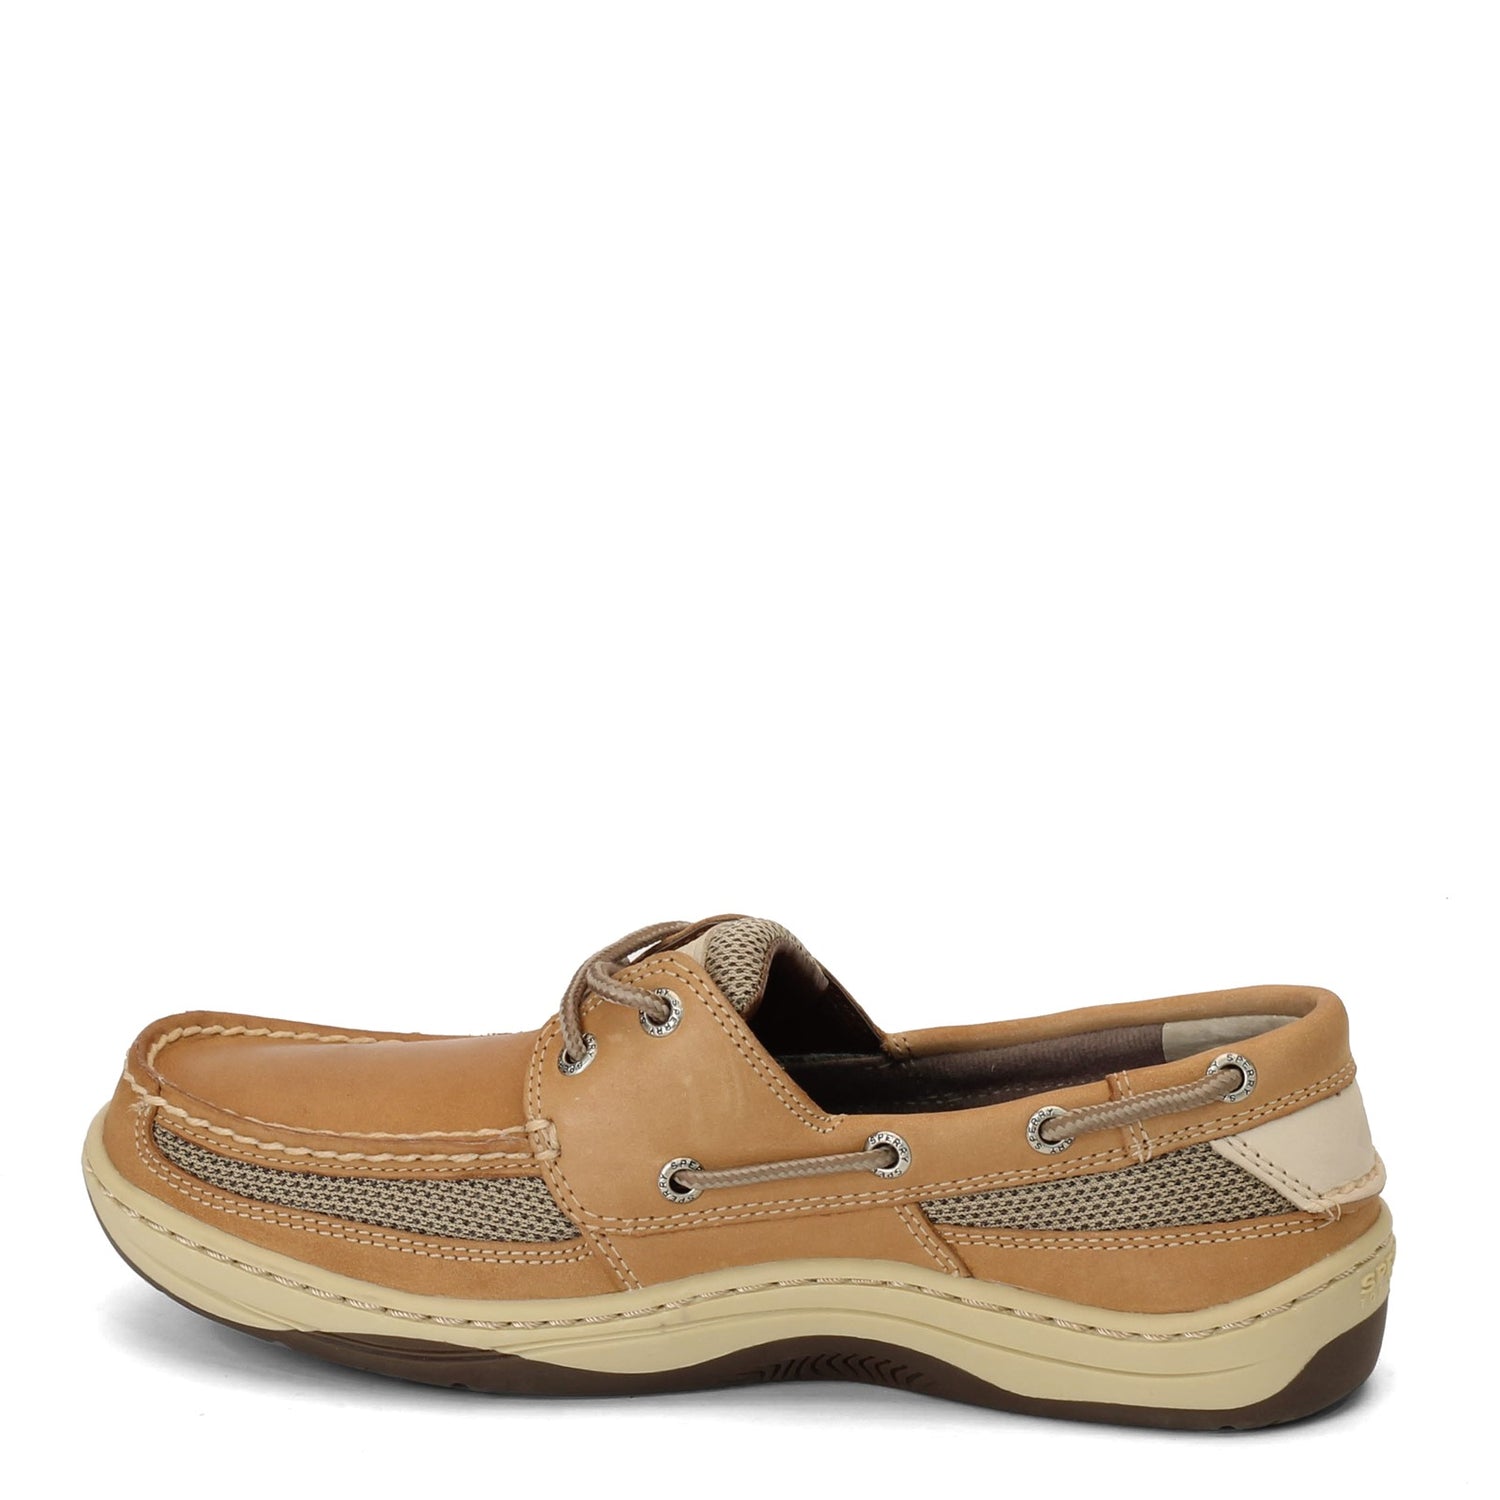 Peltz Shoes  Men's Sperry Tarpon 2-Eye Boat Shoes Tan/Beige 0771246